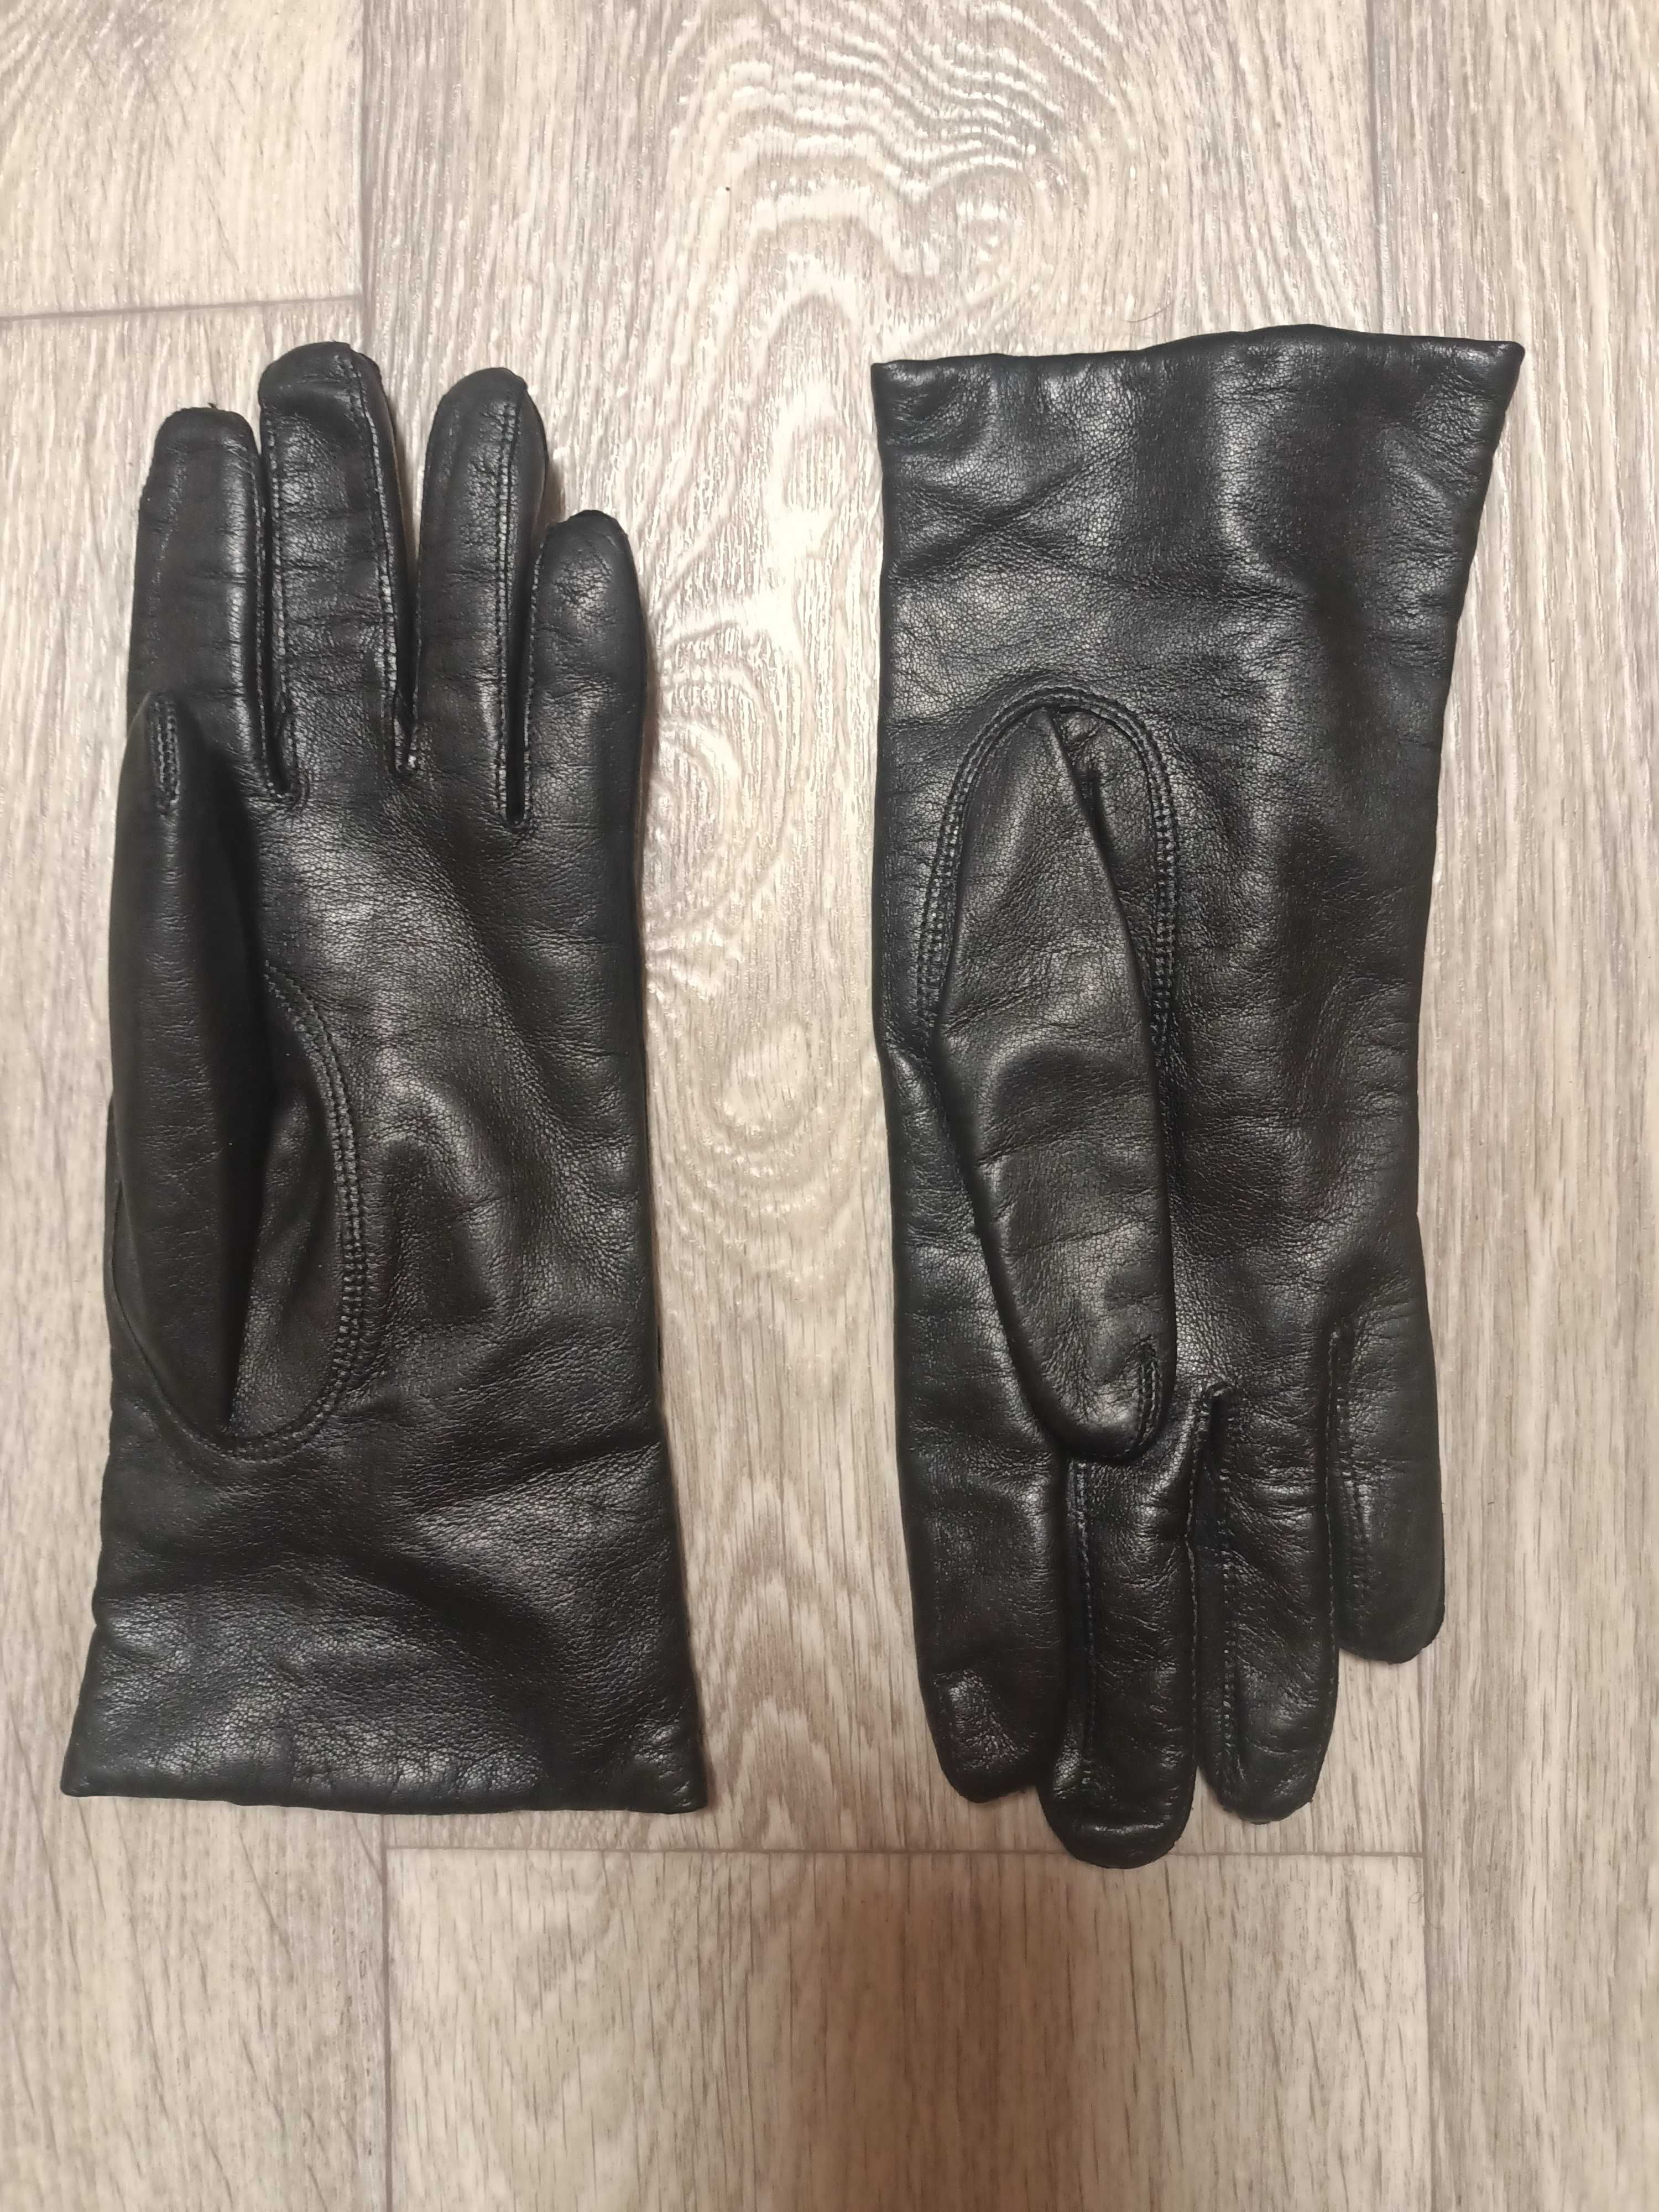 Перчатки кожаные женские 7 размер S Франція